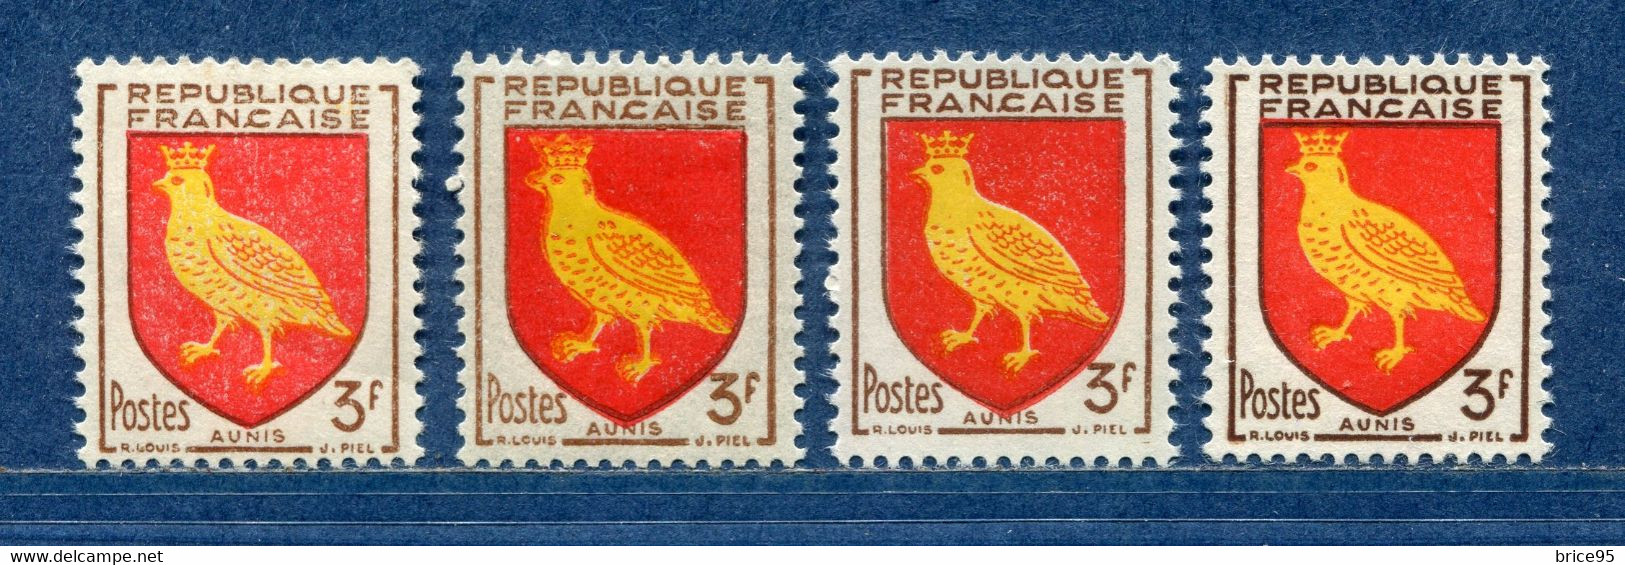 ⭐ France - Variété - YT N° 1004 - Couleurs - Pétouilles - Neuf Sans Charnière - 1954 ⭐ - Ongebruikt